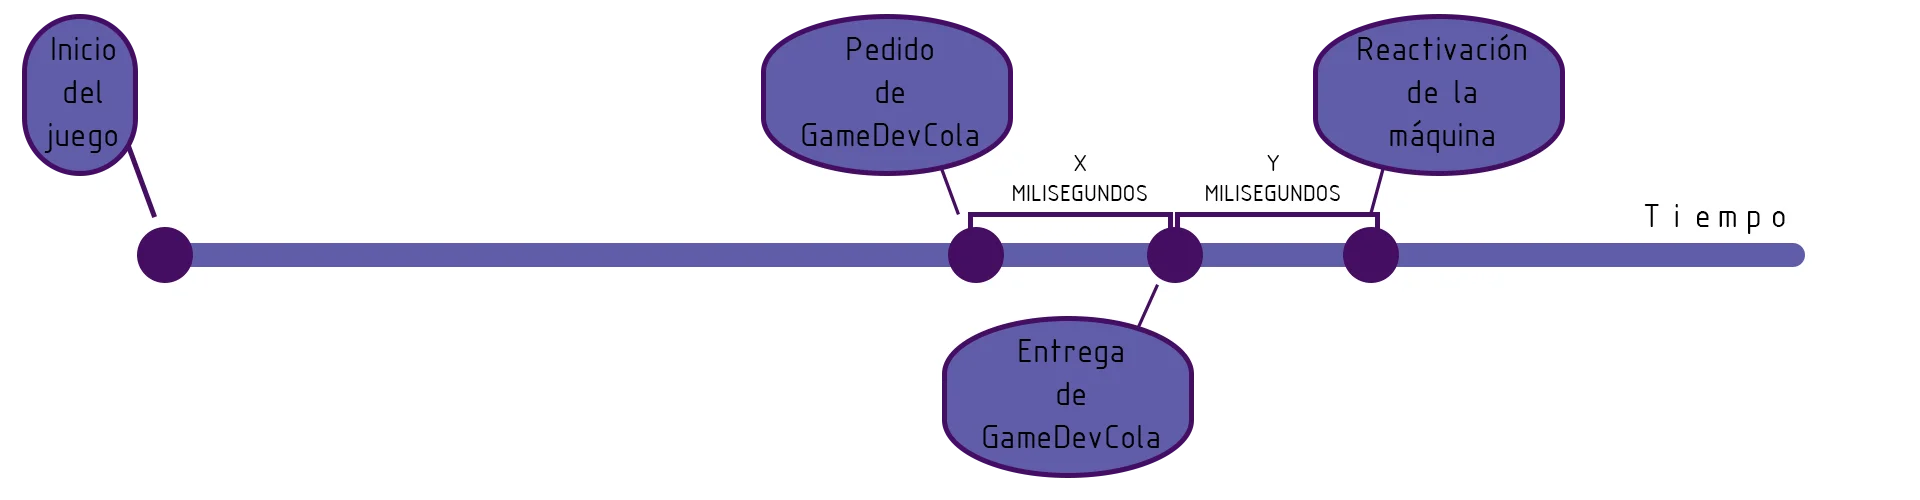 línea temporal en la que se especifican cuatro puntos en el tiempo de ejecución de un videojuego